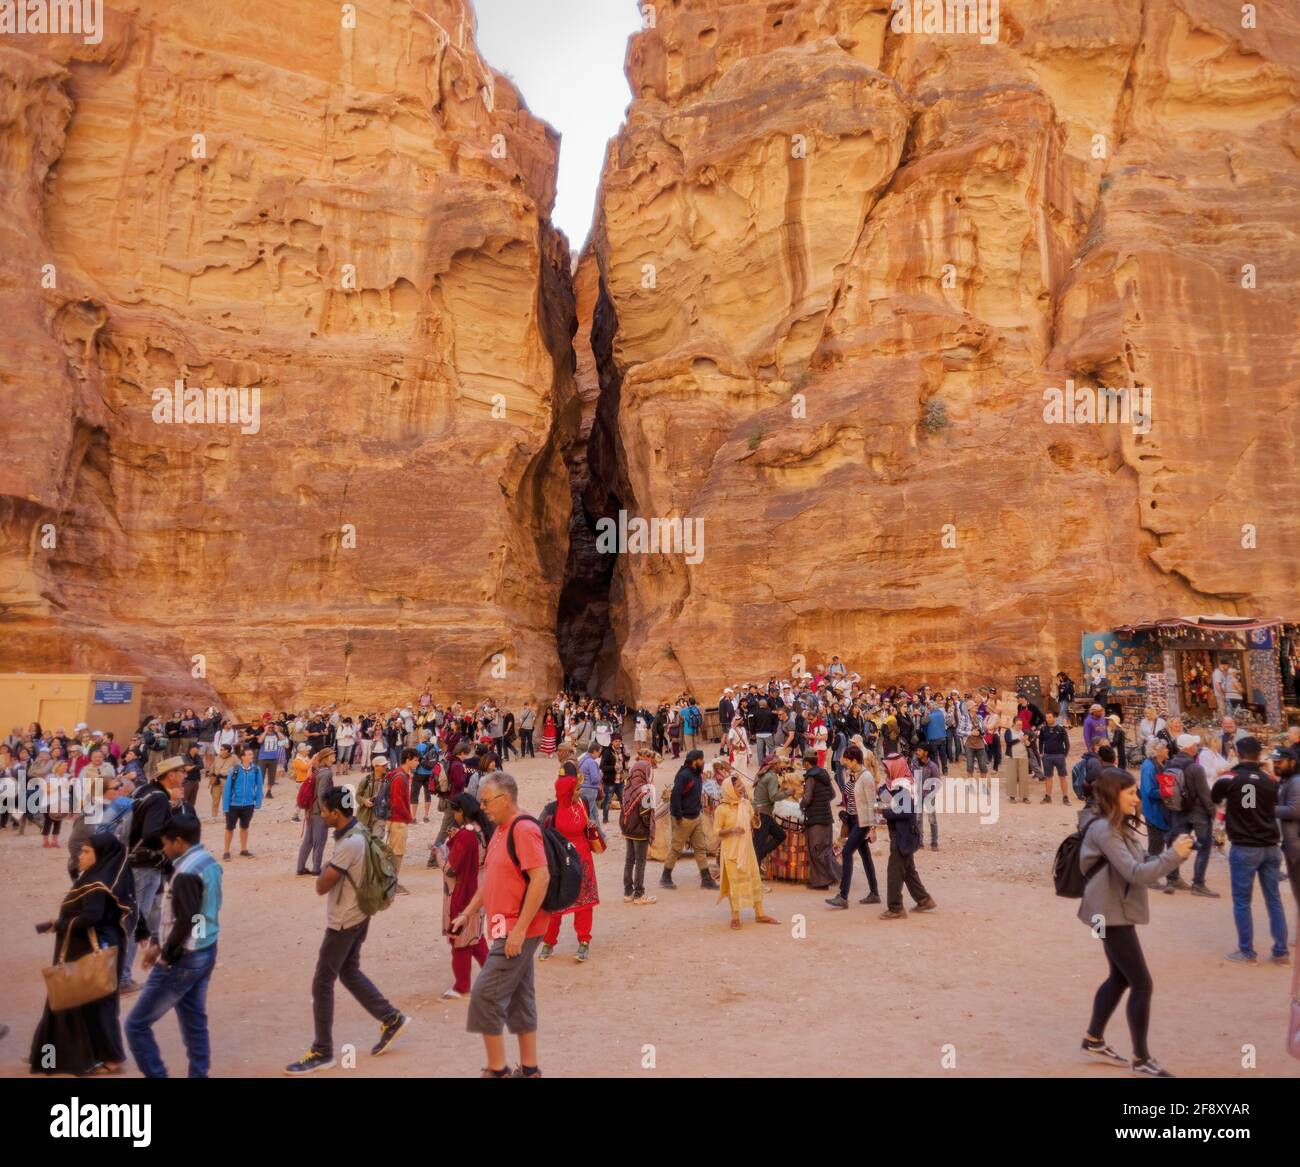 Wadi Mousa, Rock Formations And Tourists, Petra, Jordan Stock Photo